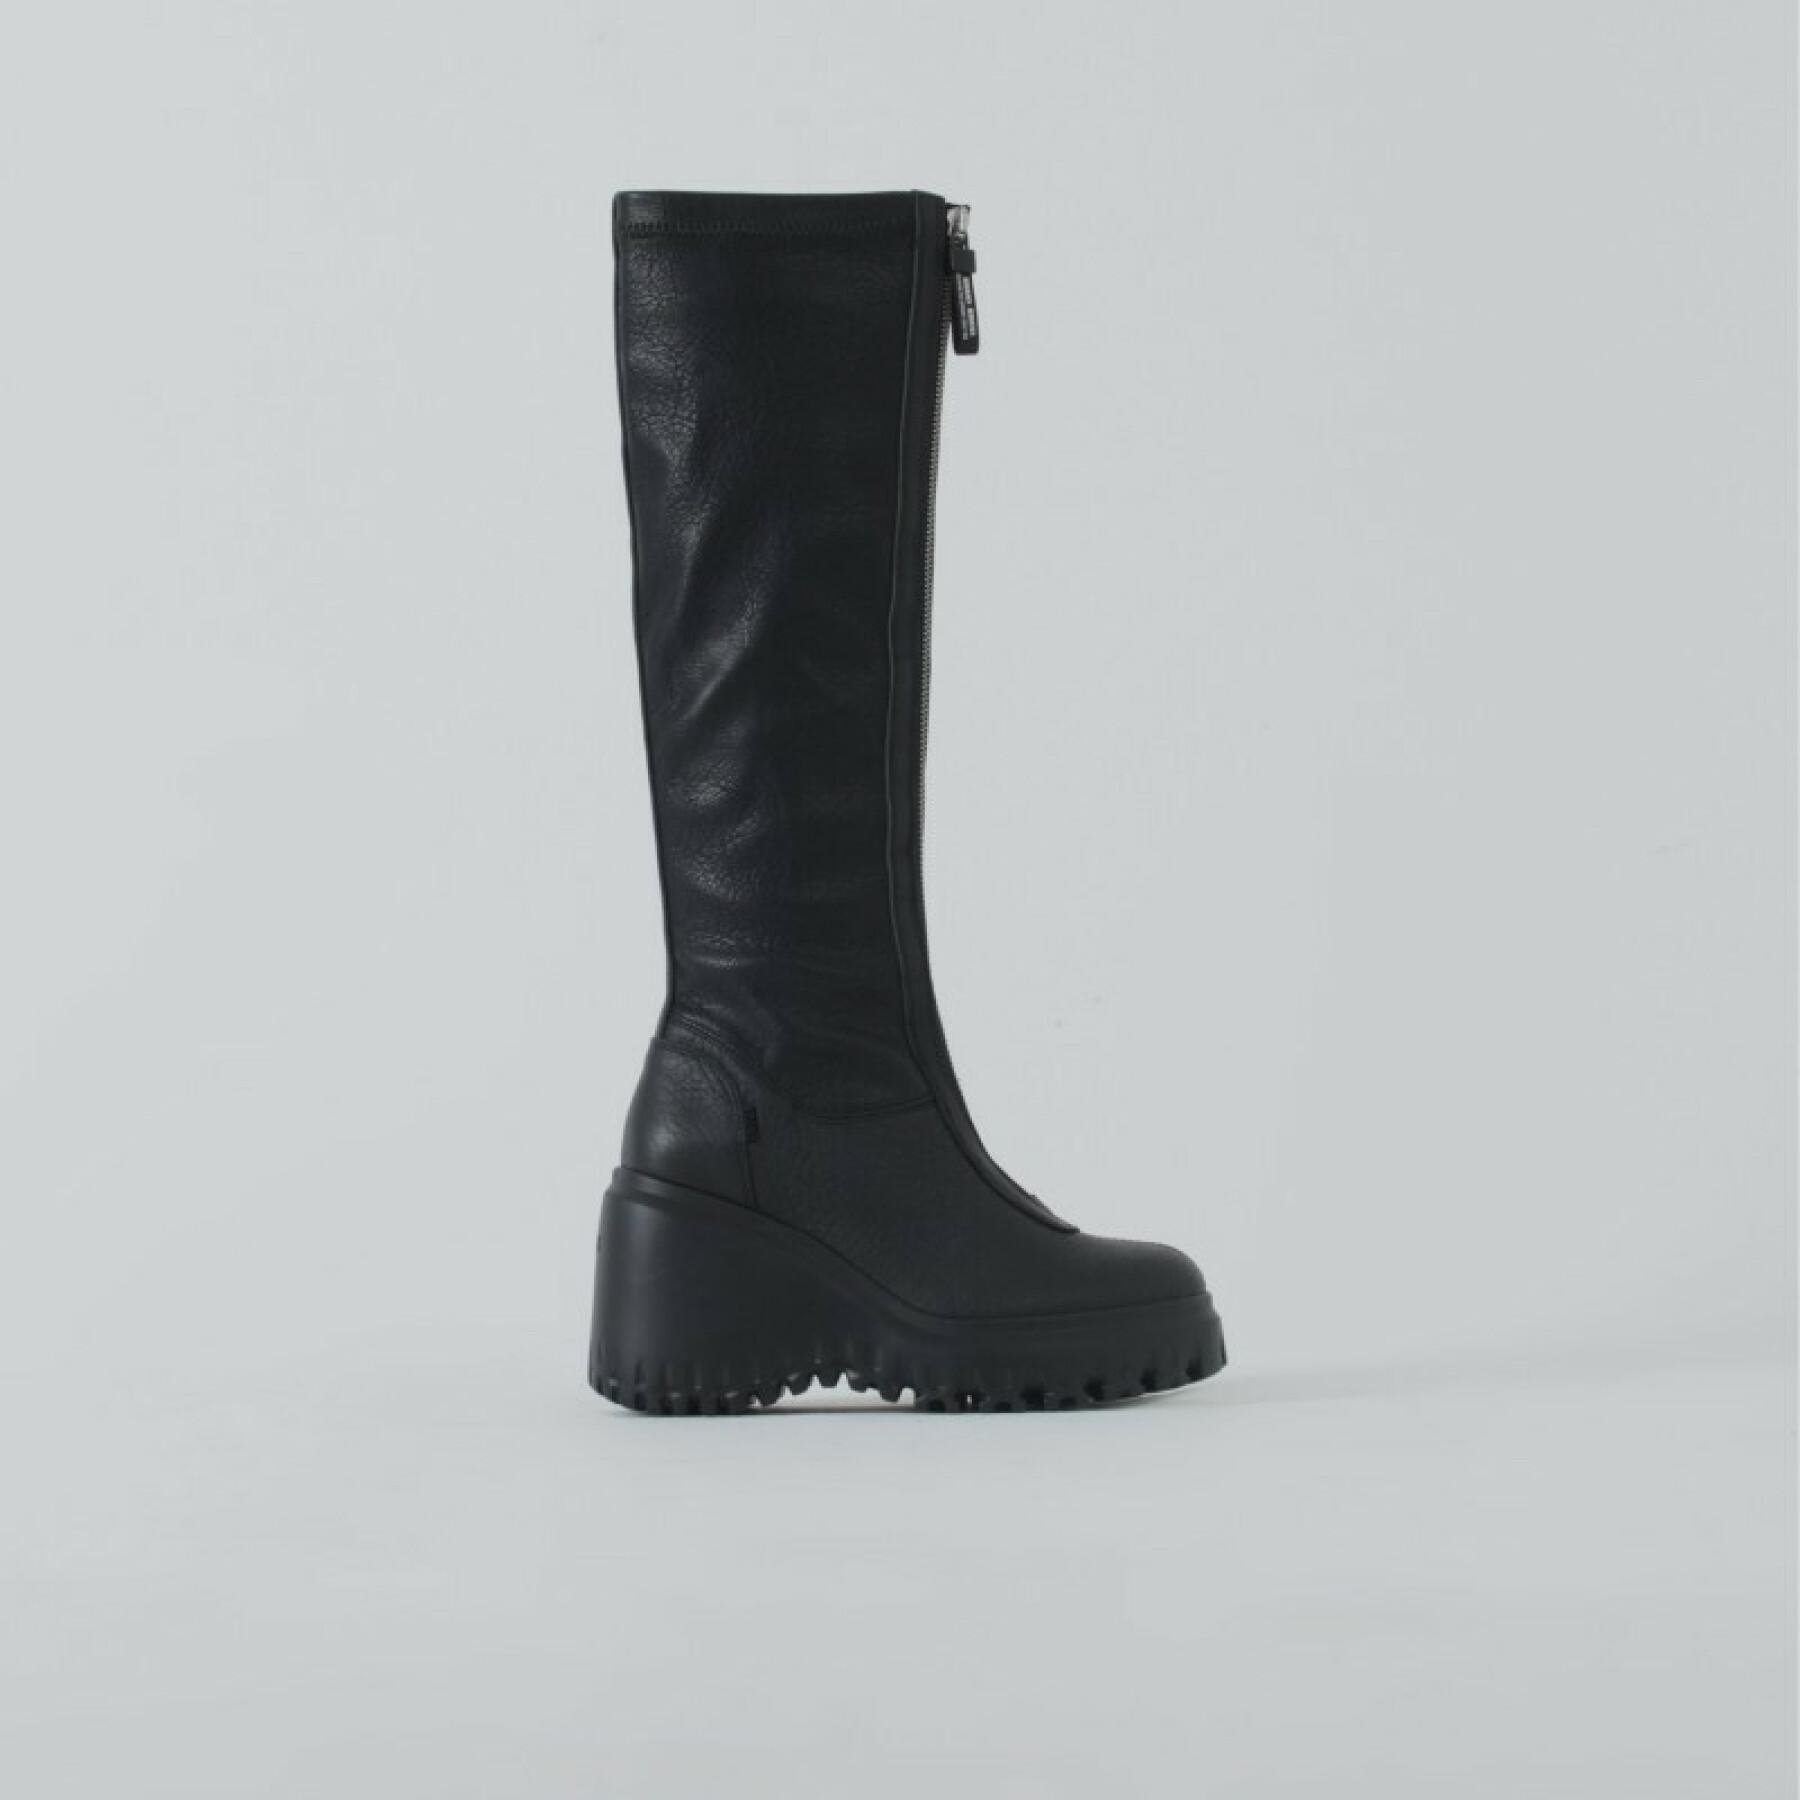 Women's boots Bronx 14225-G-01